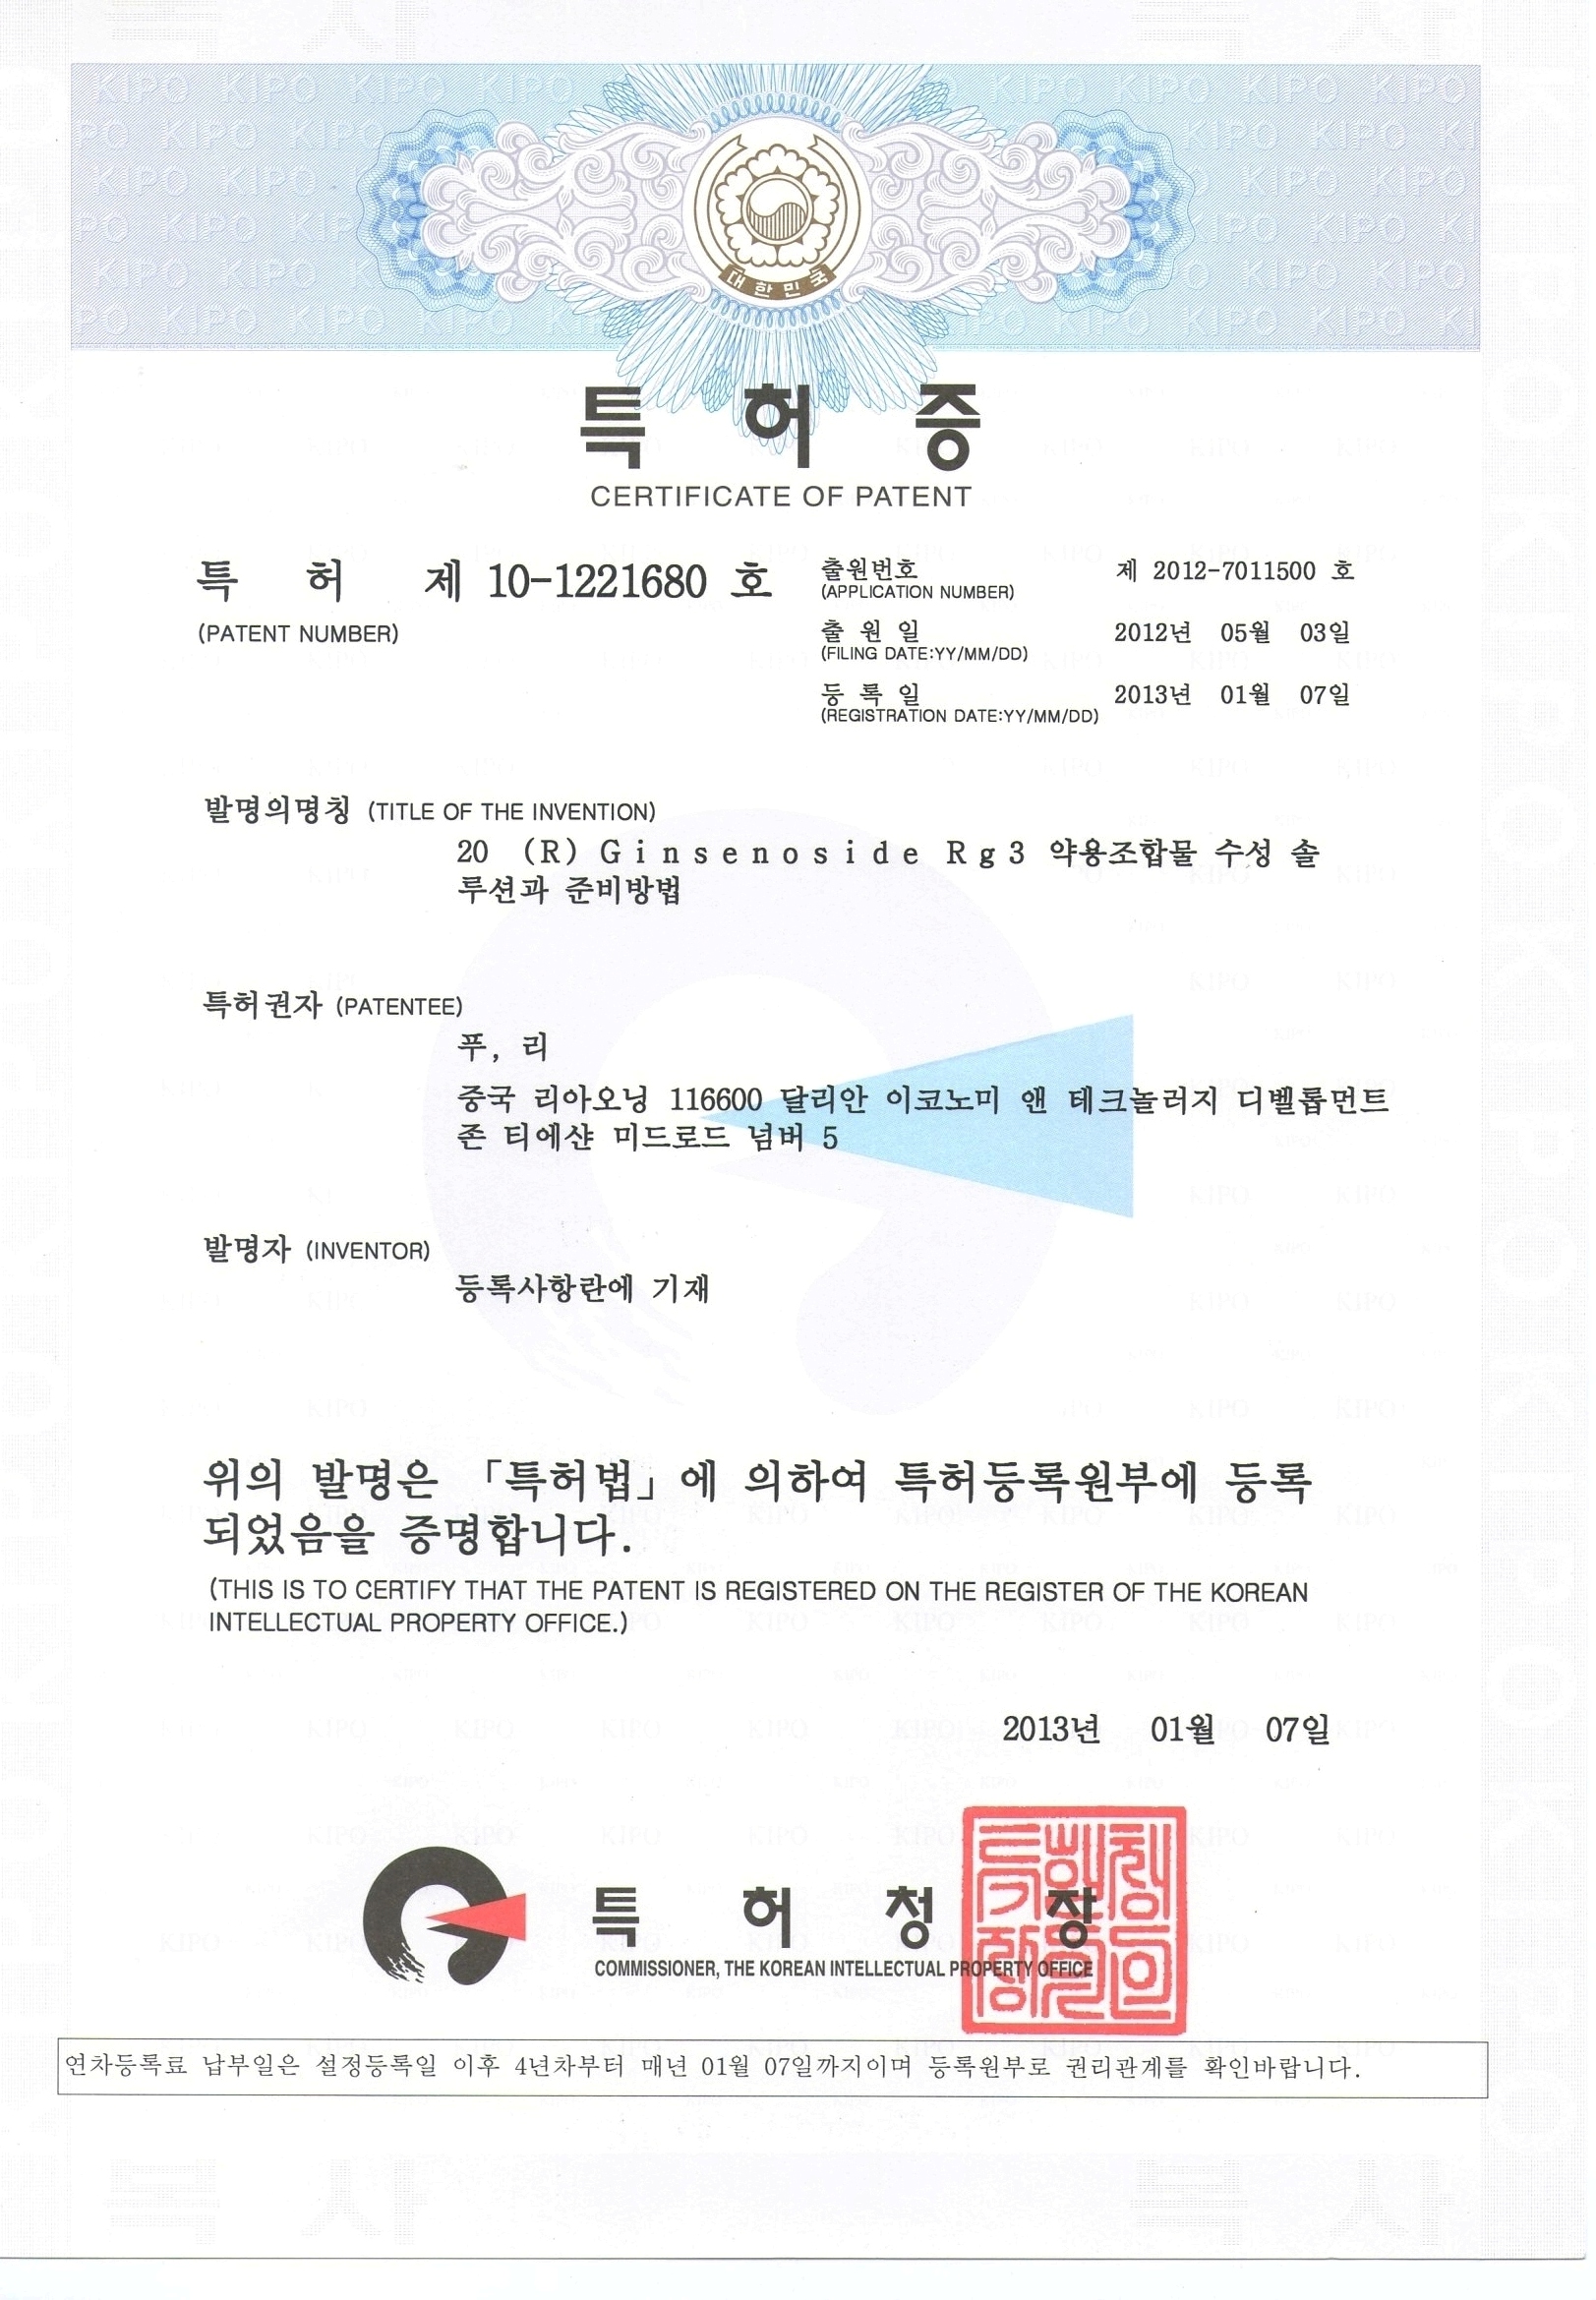 人参皂苷Rg3韩国专利